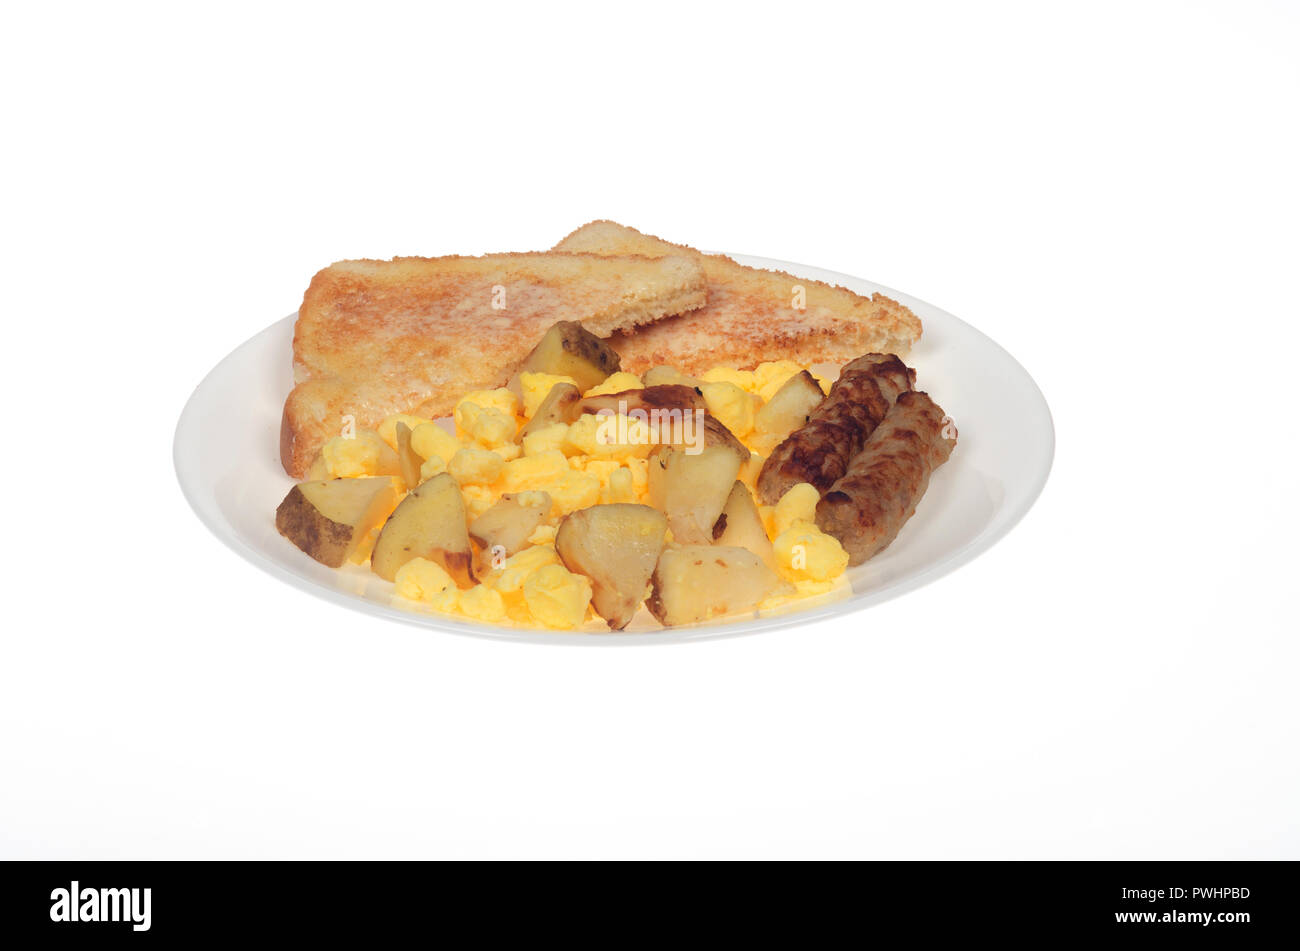 Uova strapazzate, forno patate arrosto, salsicce e bianco imburrato toast sulla piastra bianca Foto Stock